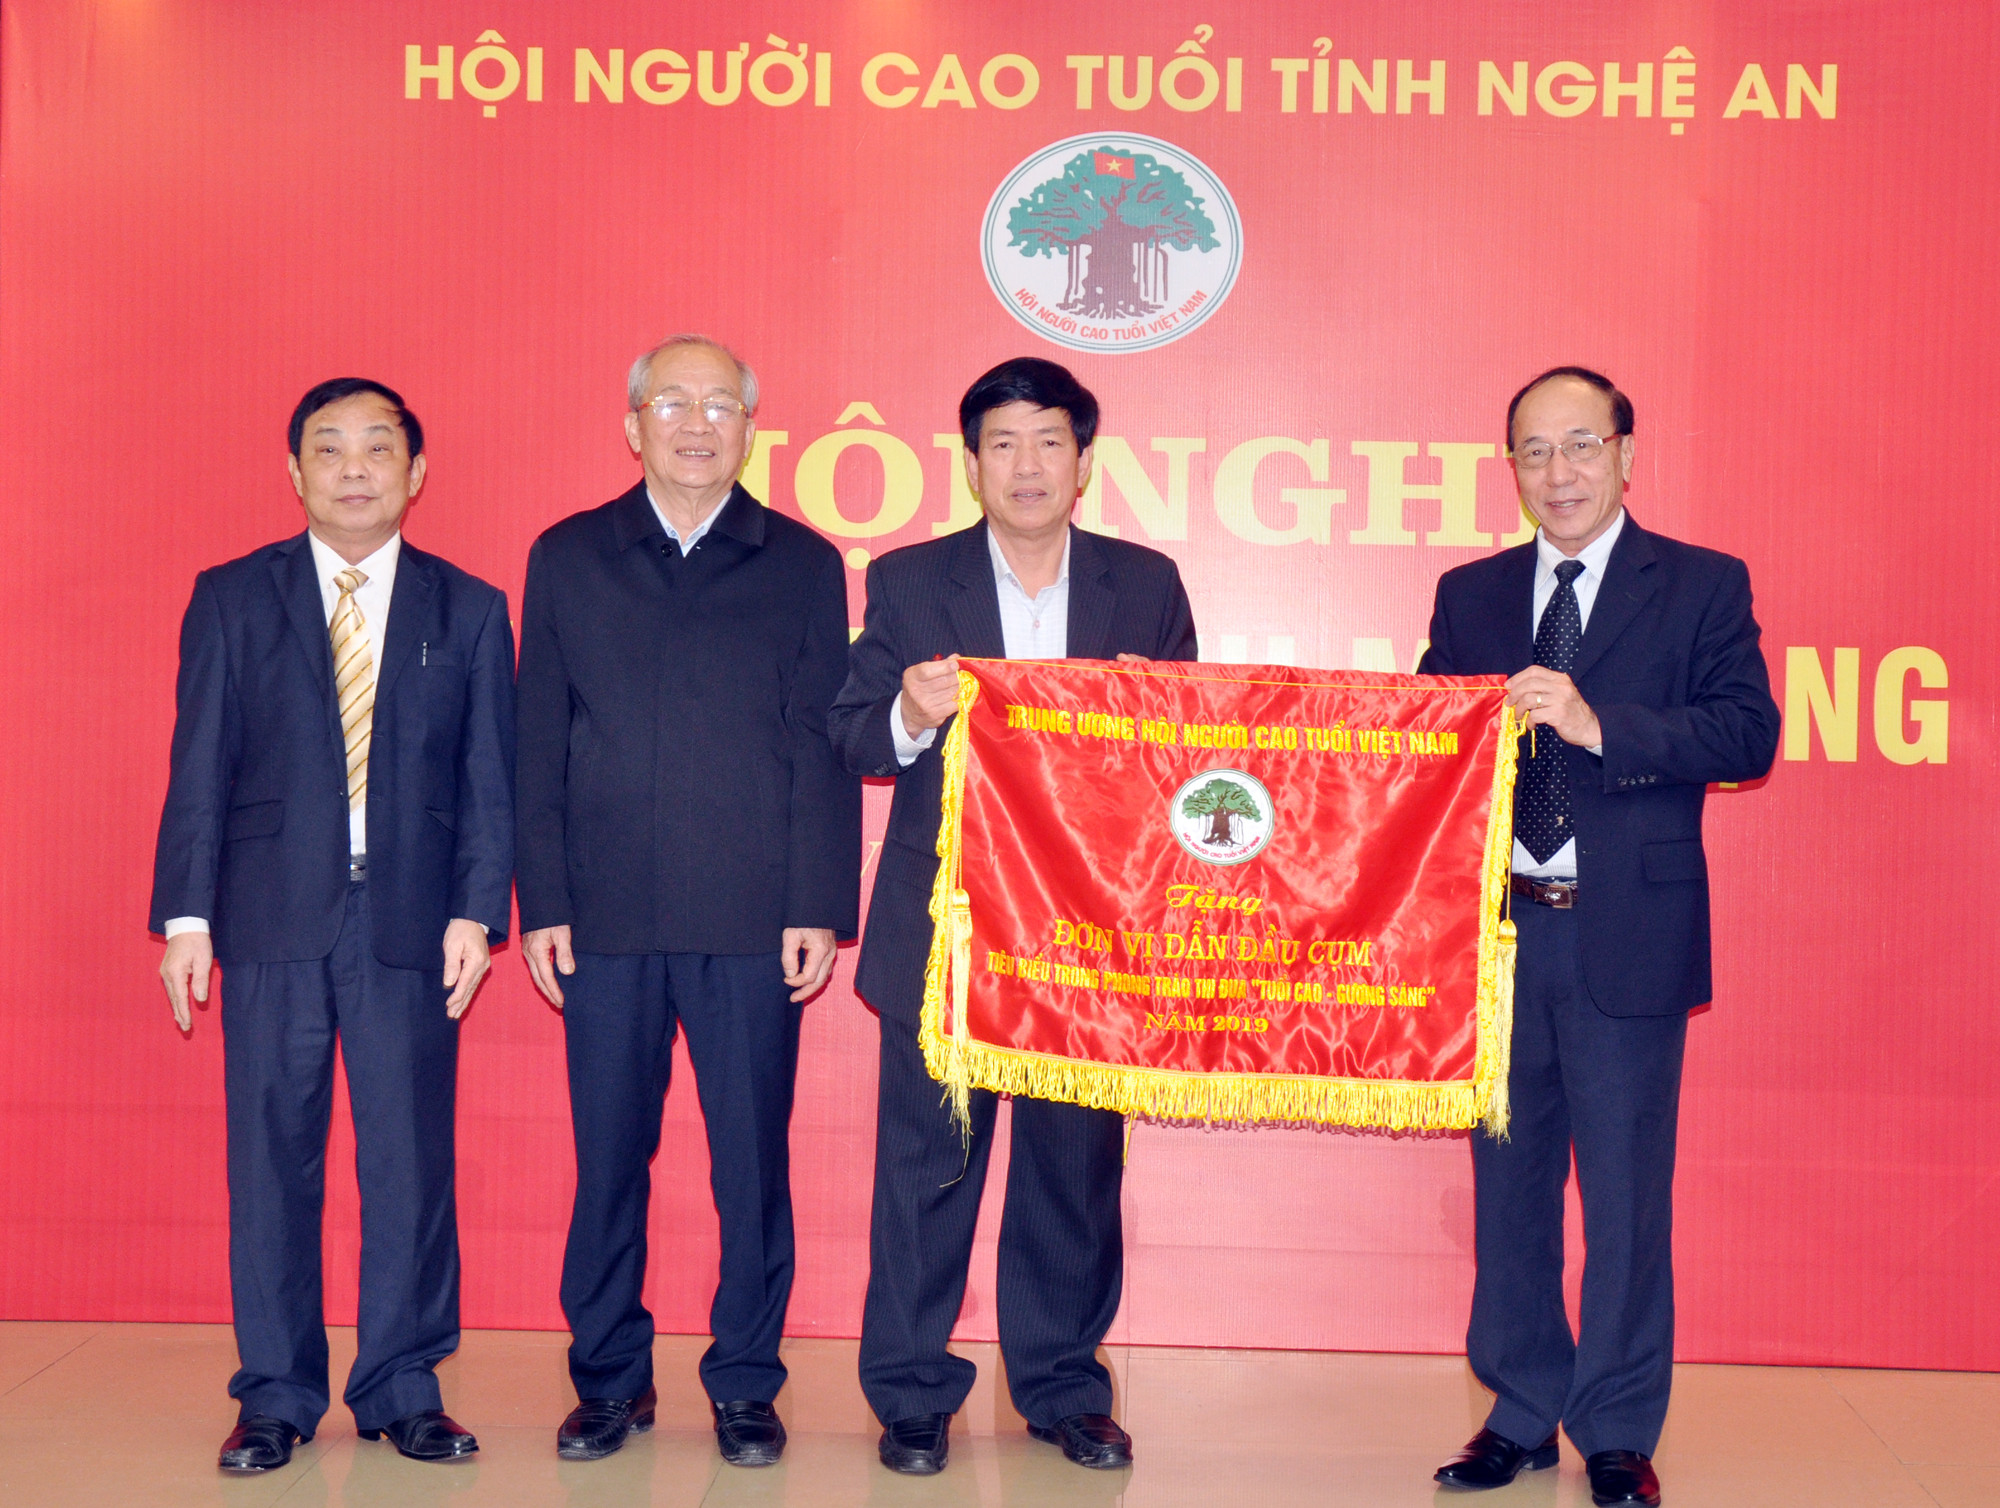 Đồng chí Nguyễn Hòa Bình – Phó Chủ tịch Hội Người cao  tuổi Việt Nam tặng Cờ thi đua cho Hội Người cao tuổi Nghệ An. Ảnh: CK